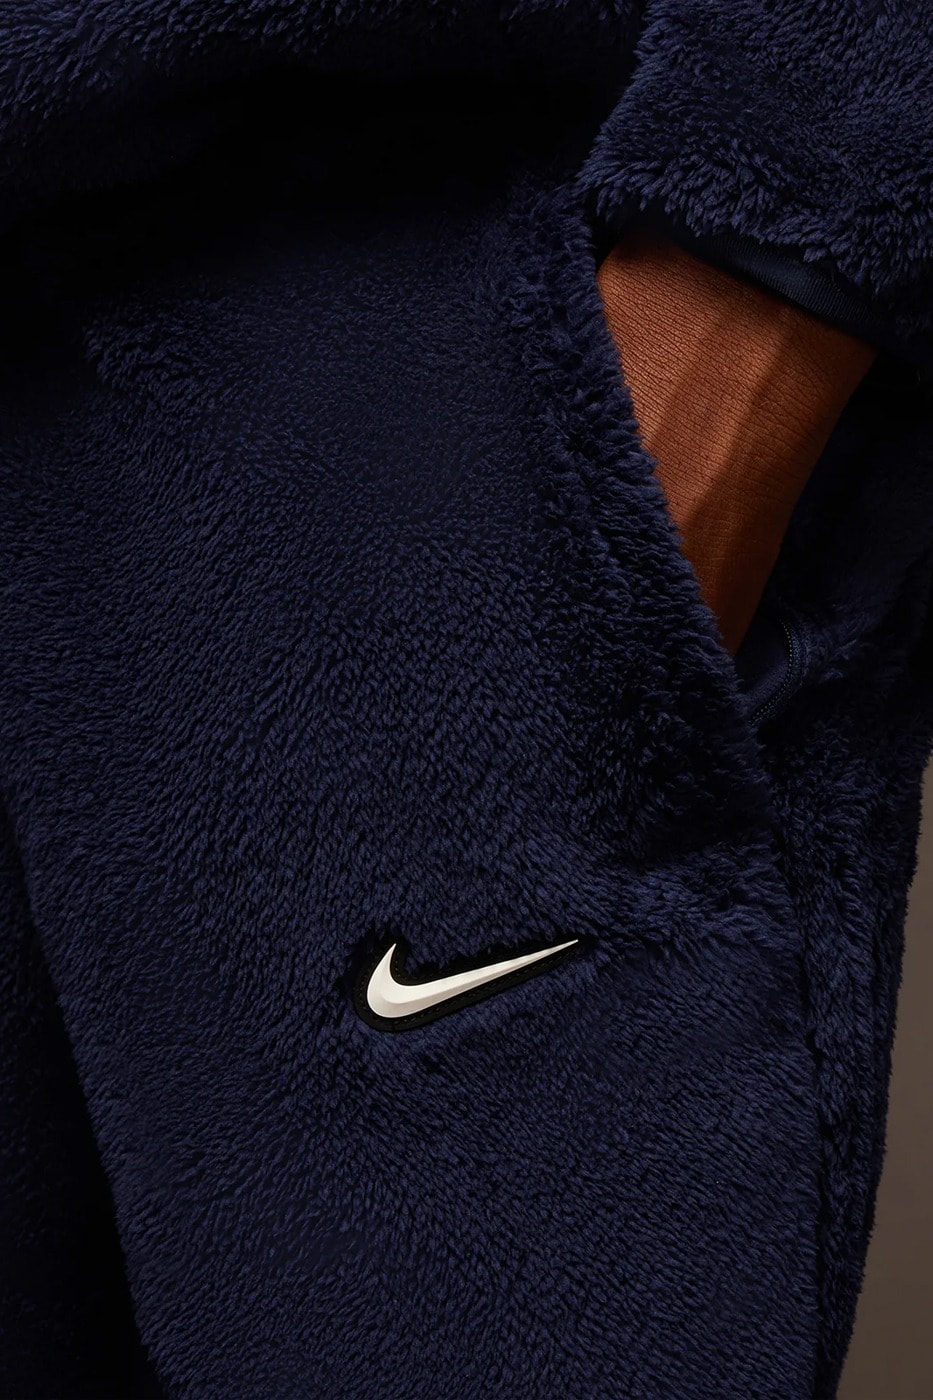 Nike NOCTA 8K Peaks 全新服裝系列正式登場